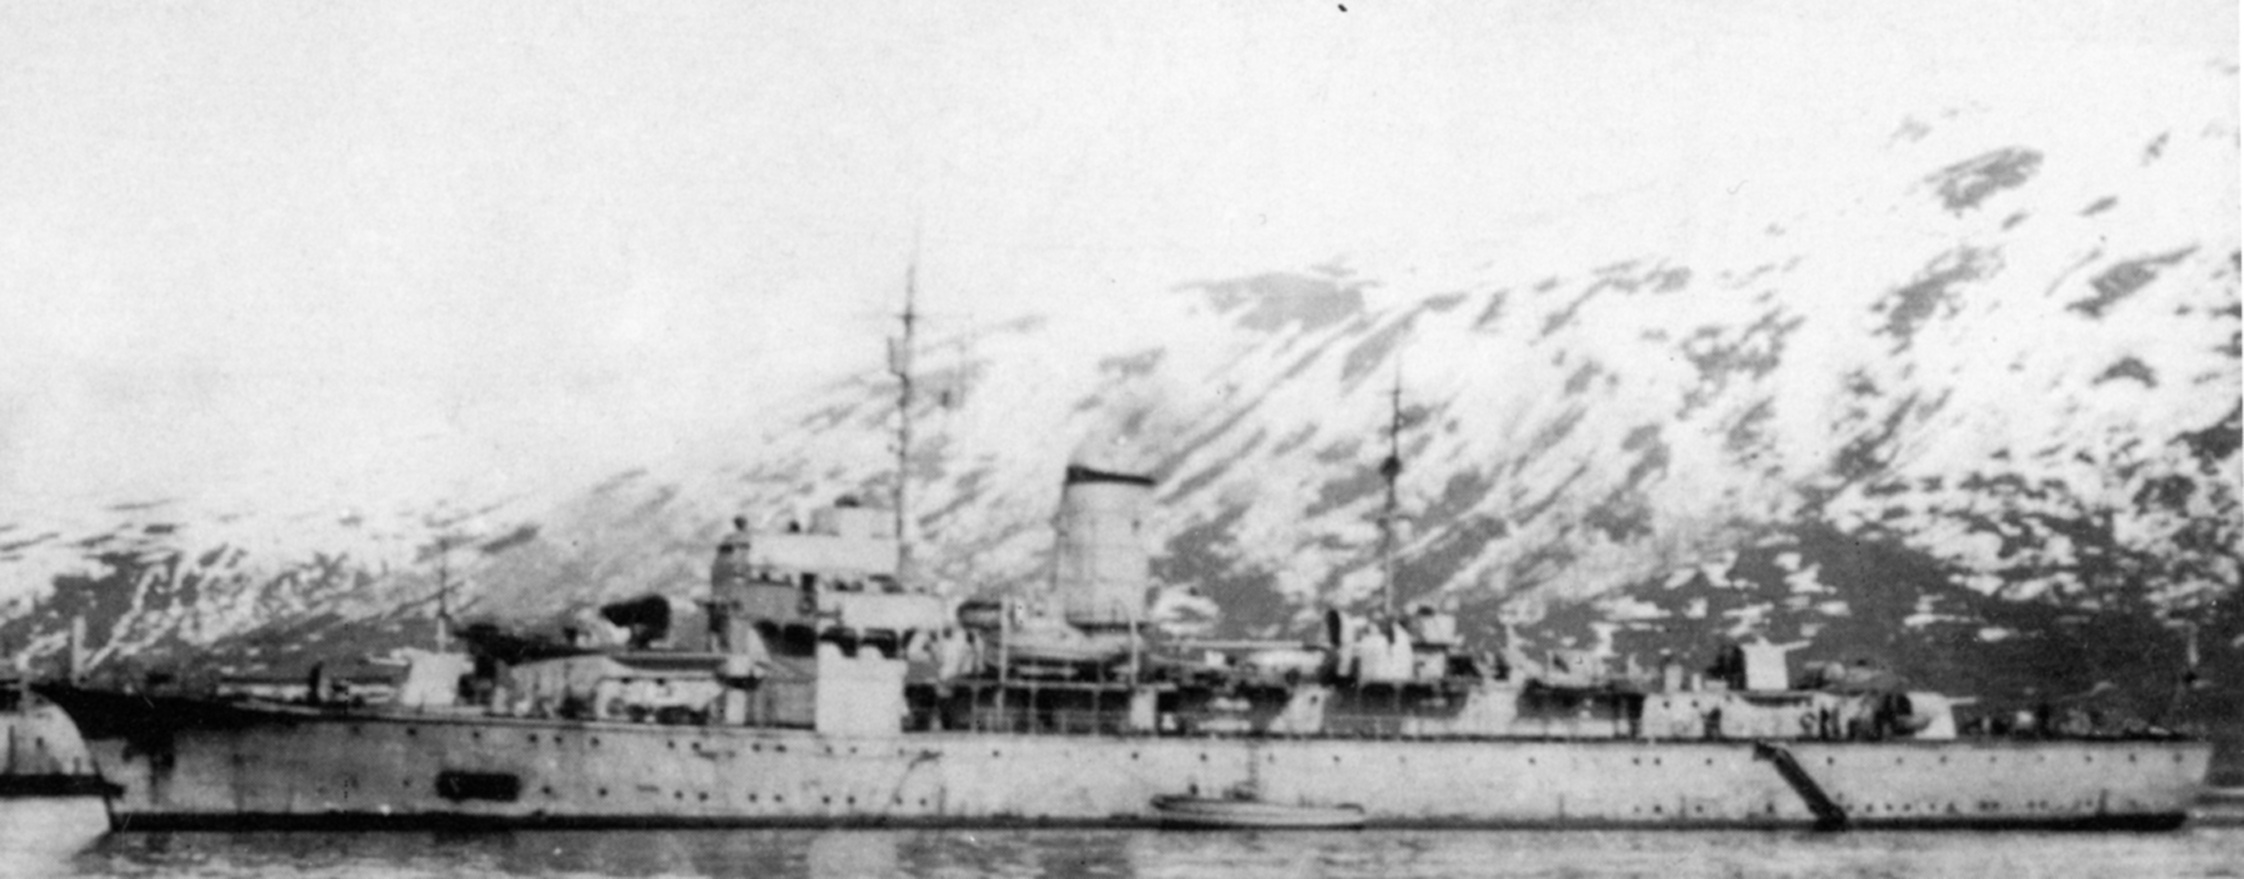 Brummer in norwegischen Fjord 1943.JPG